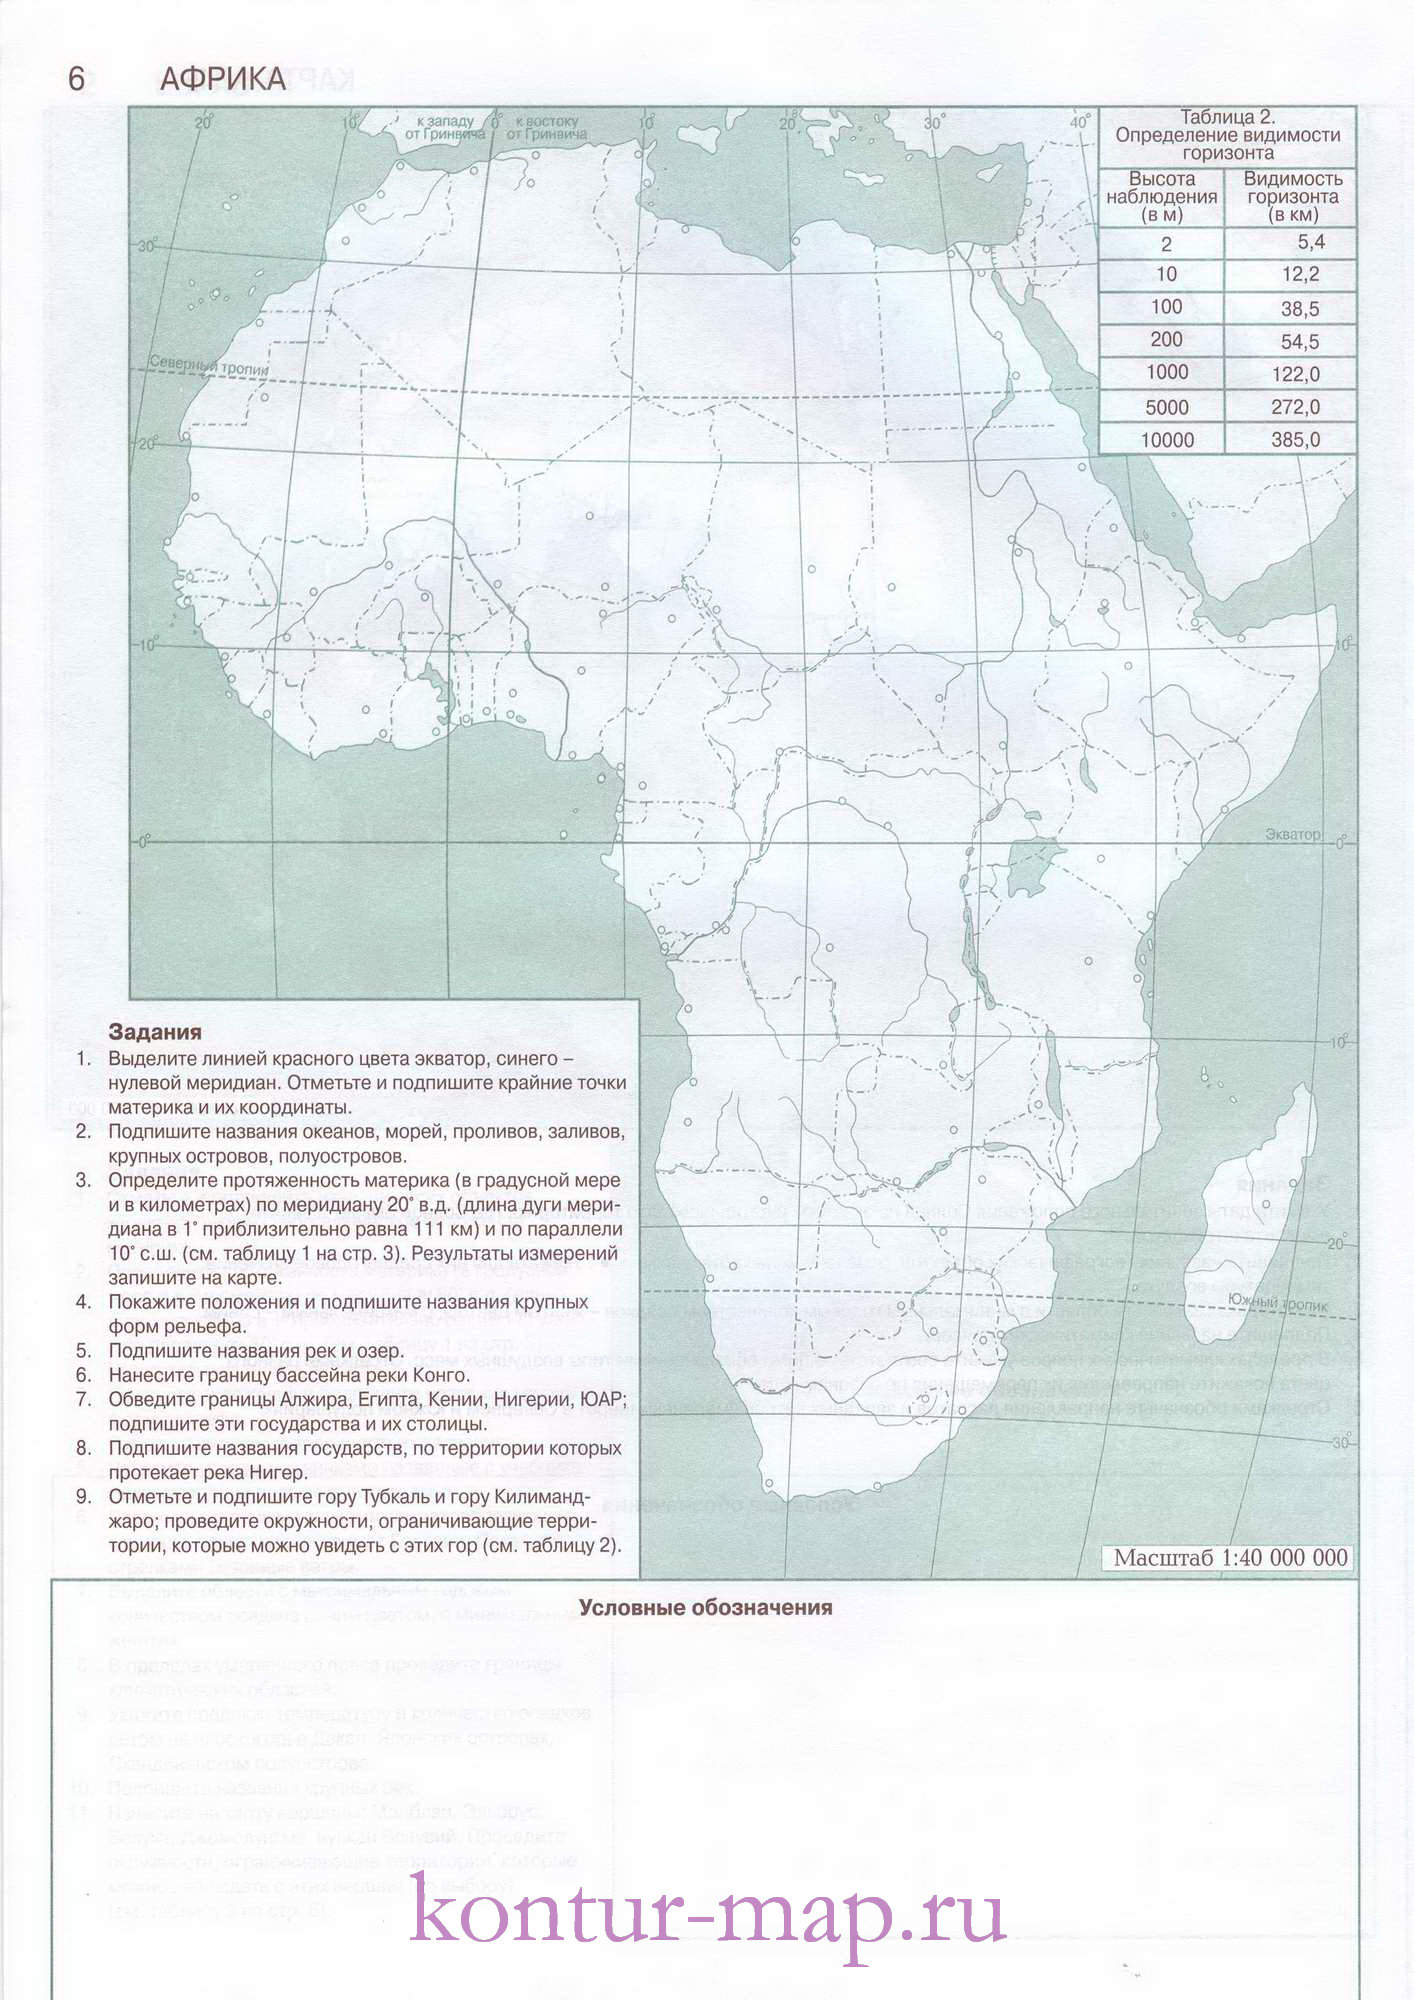 Контурная карта Африки с заданиями - физическая карта и государства Африки,A0 -